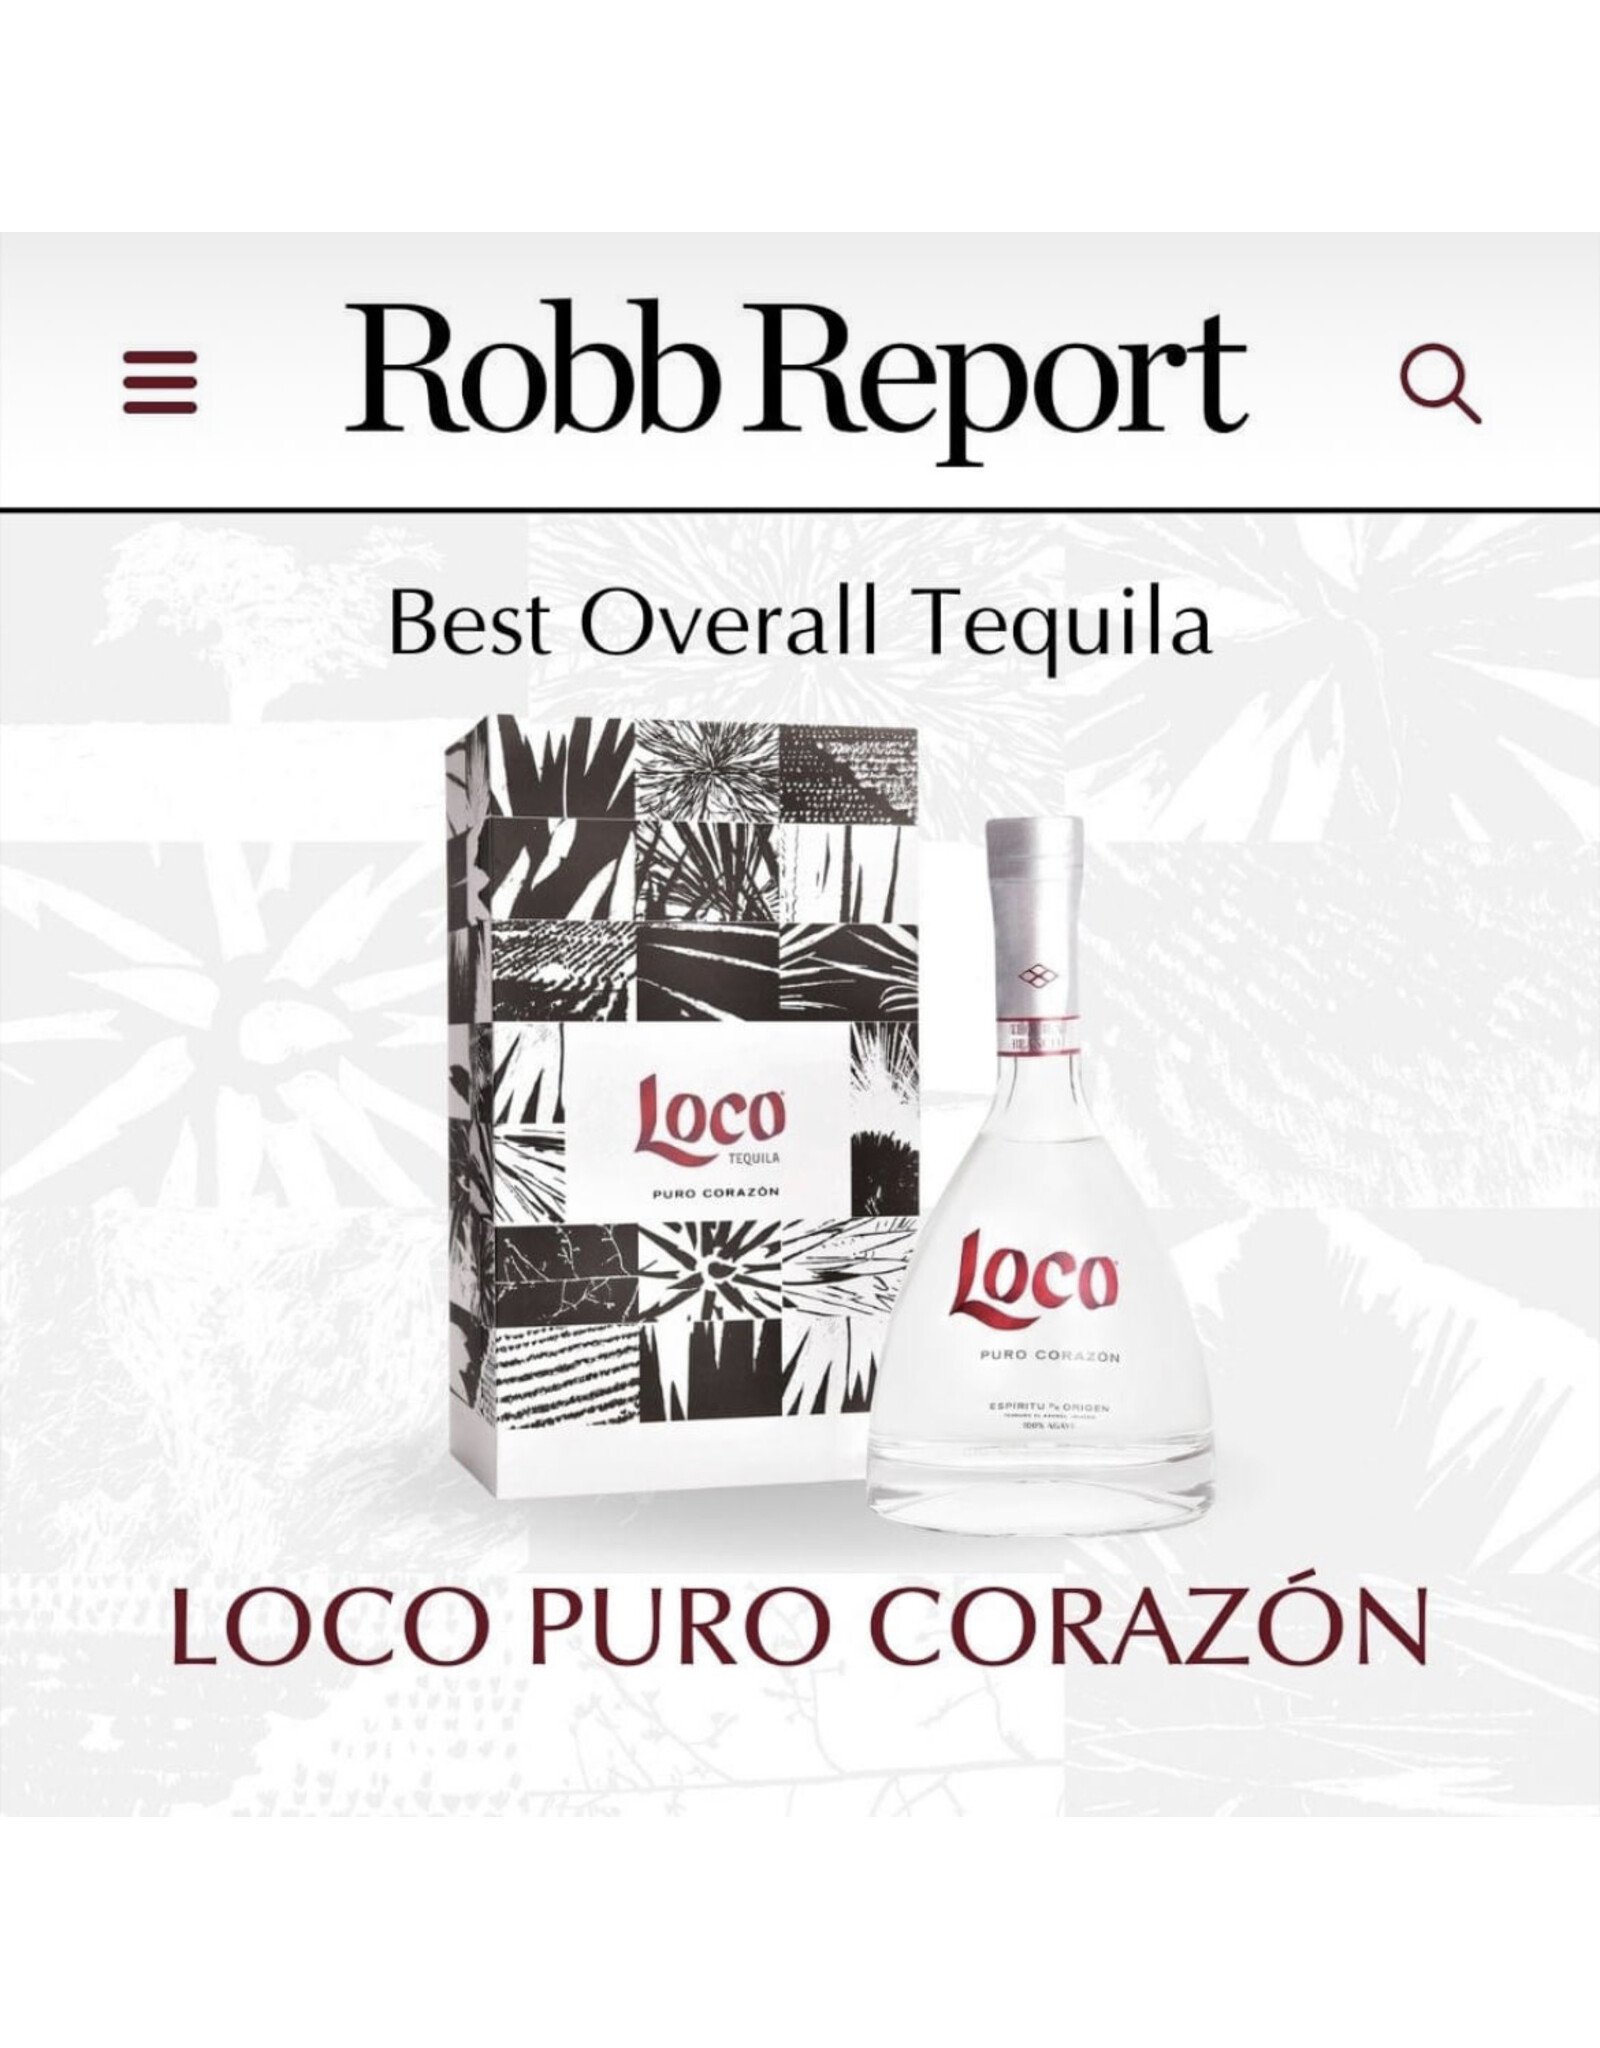 Loco PURO CORAZON Blanco Tequila, Jalisco, Mexico NOM 1123 AF